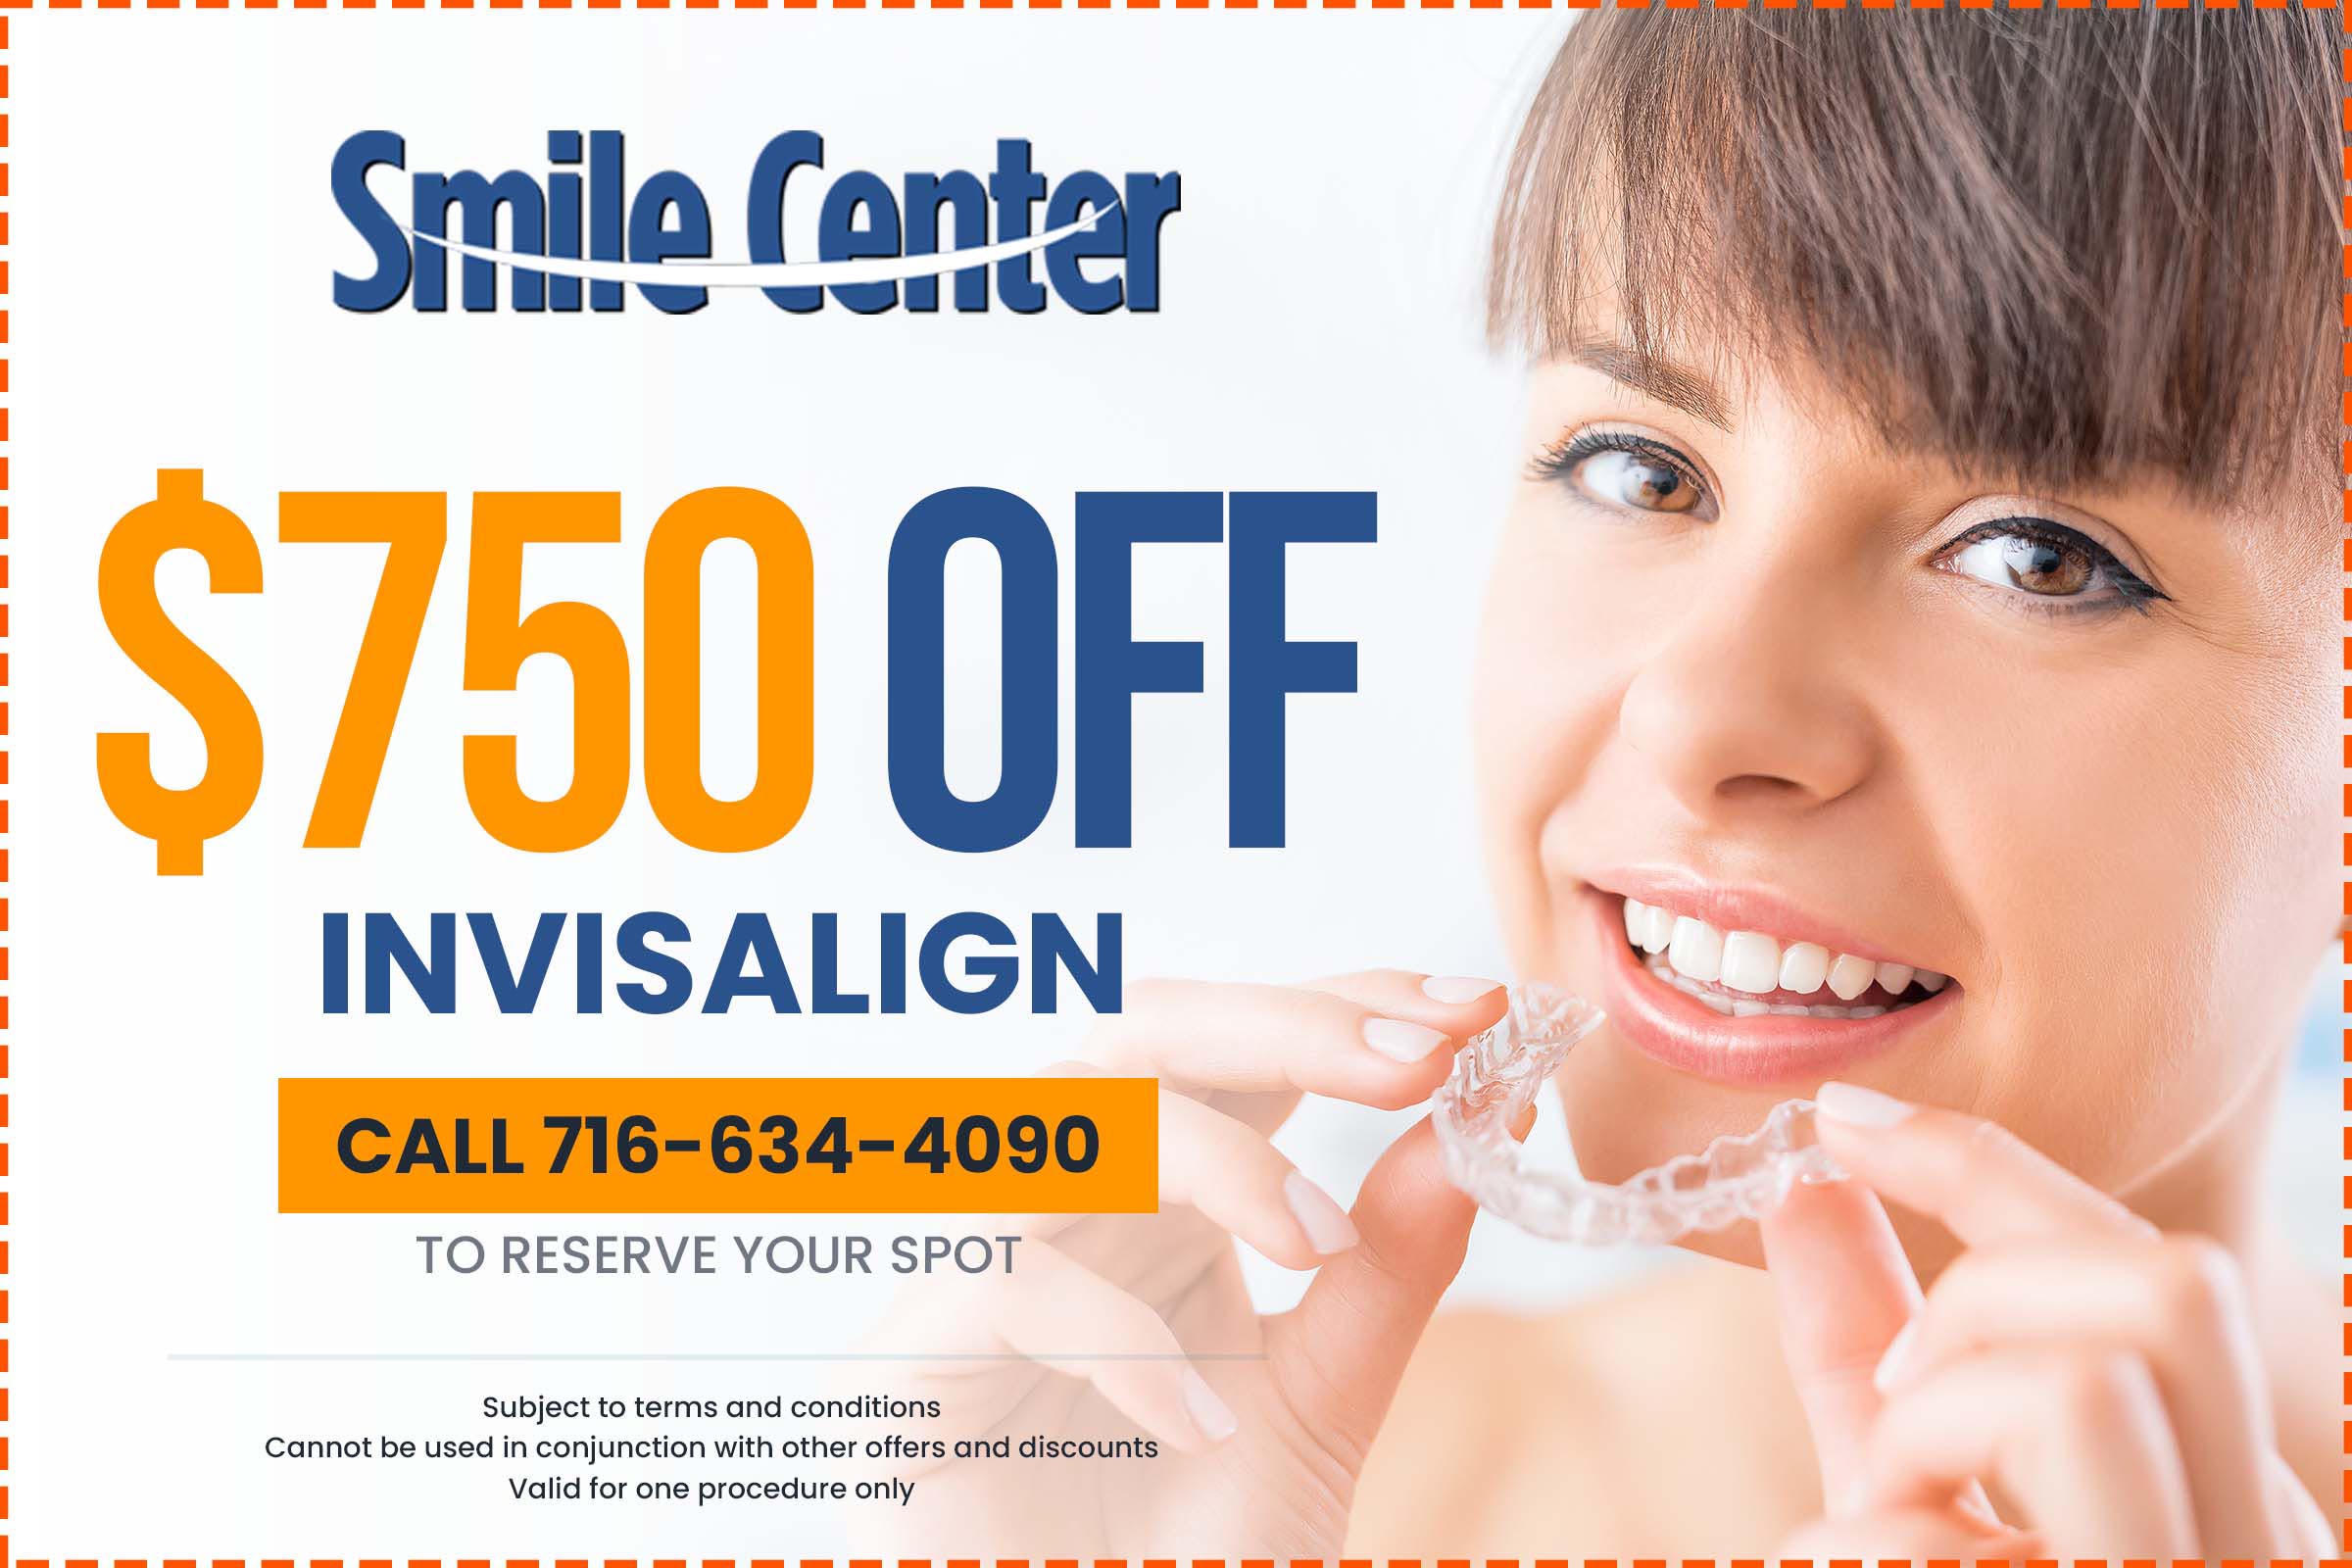 Smile Center Buffalo NY - Invisalign